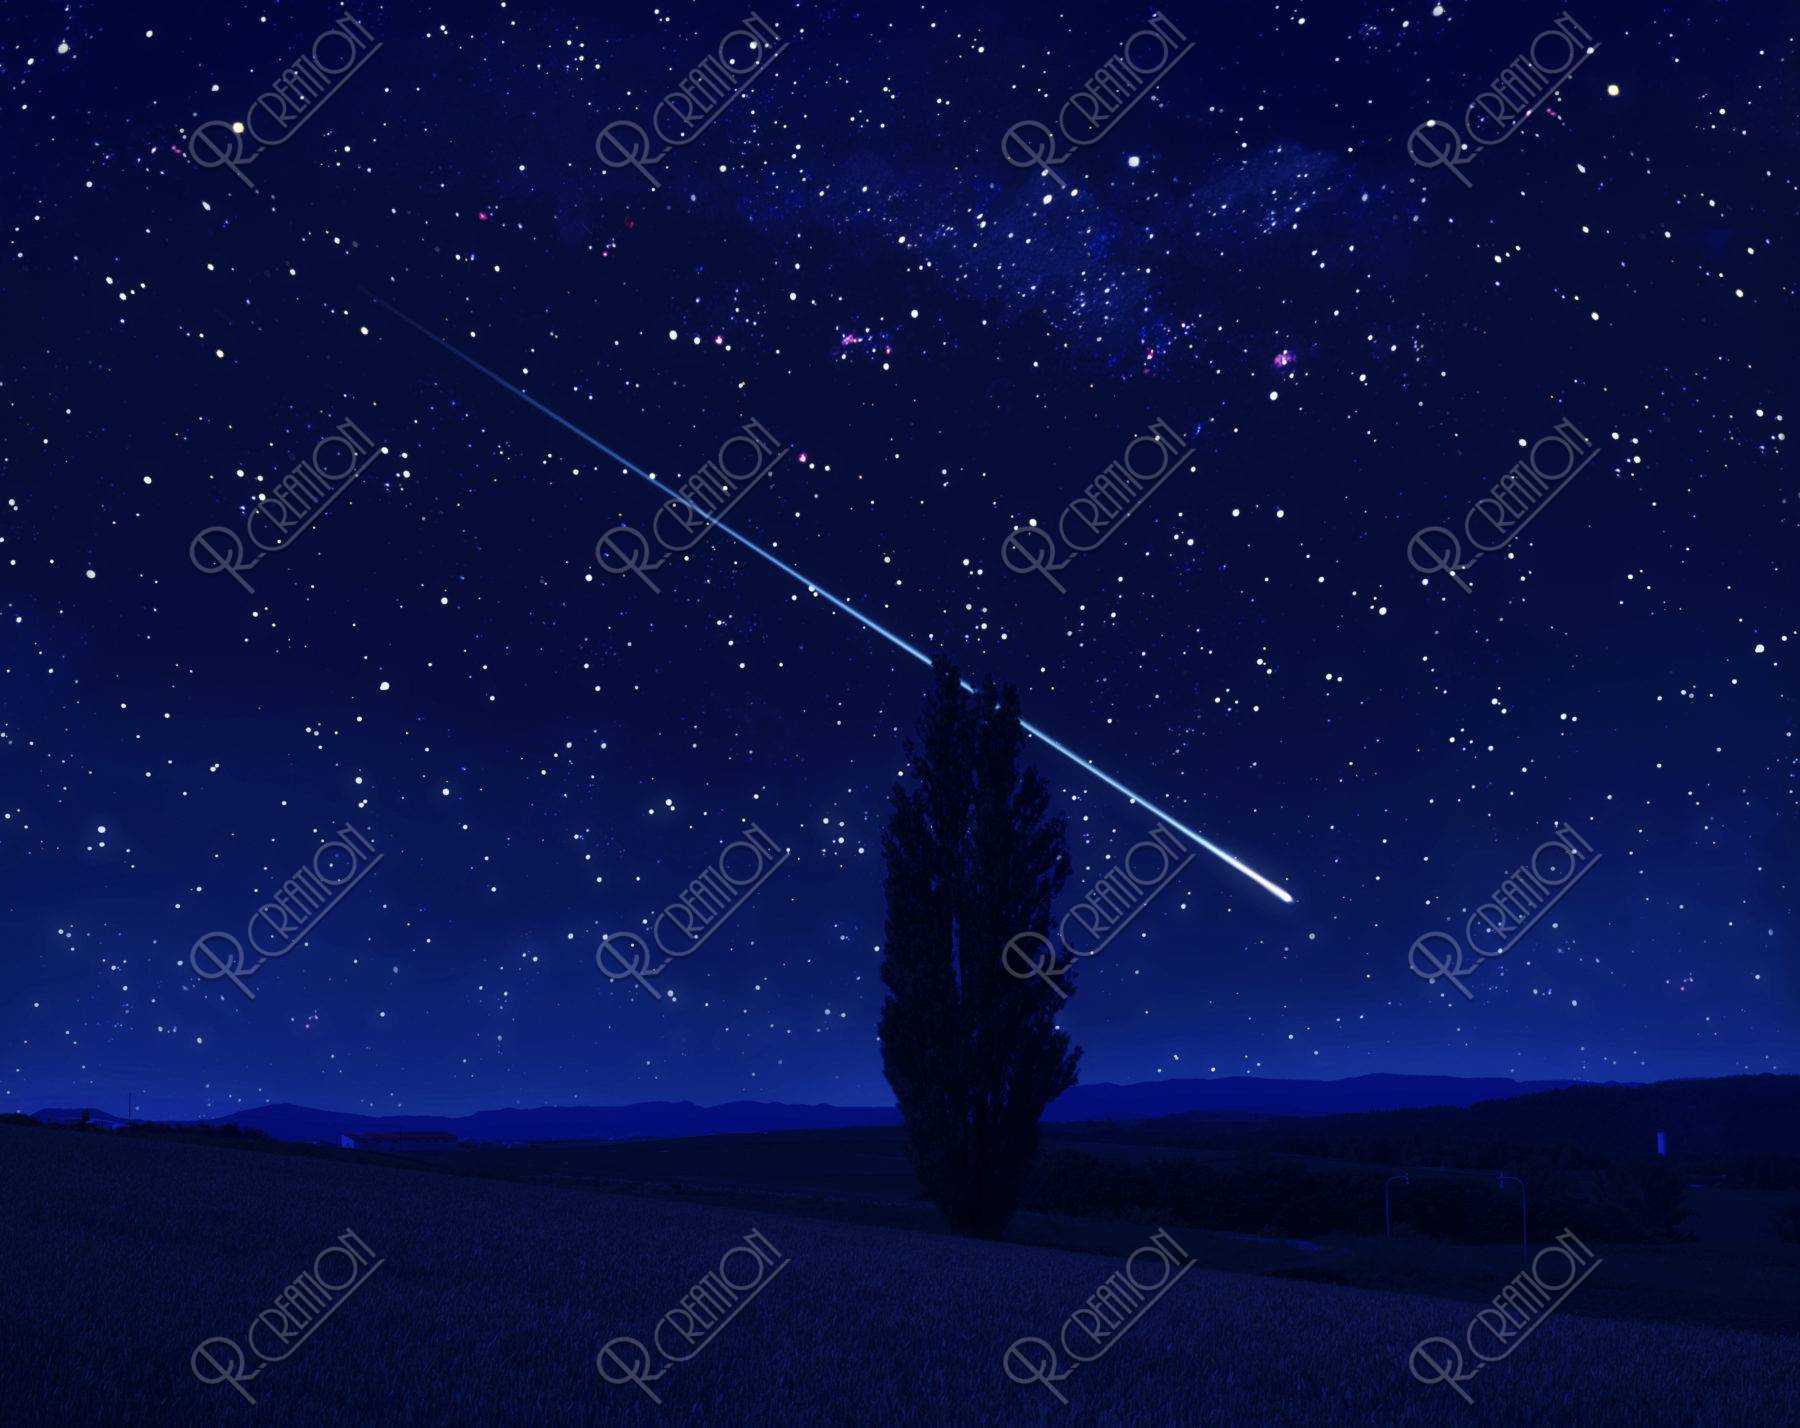 星空 流れ星 夜景 丘 木 合成 ストックフォト アールクリエーション